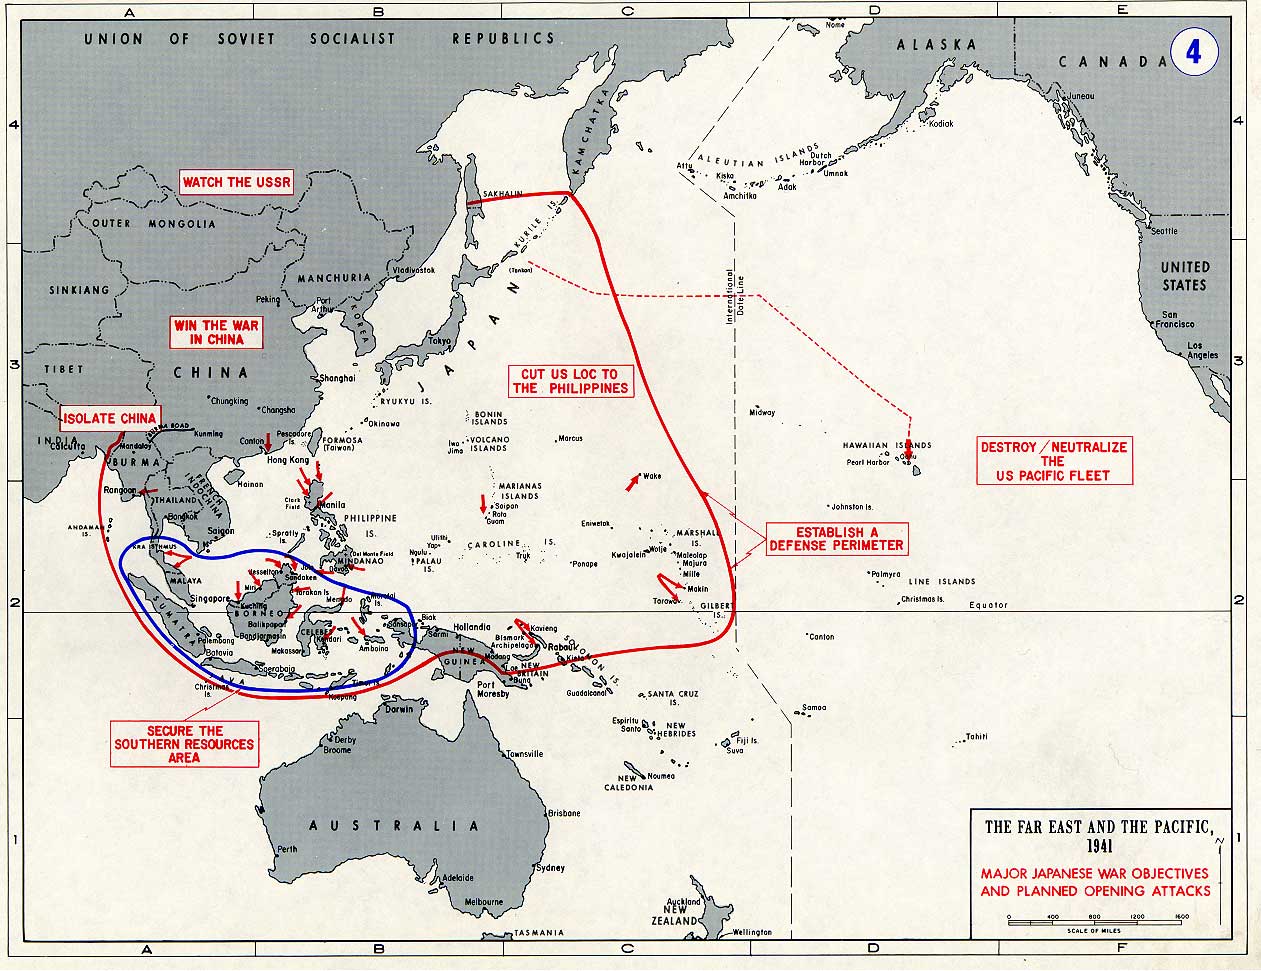 Objectifs de guerre majeurs et attaques programmées du Japon. Source: Académie militaire de West Point. -